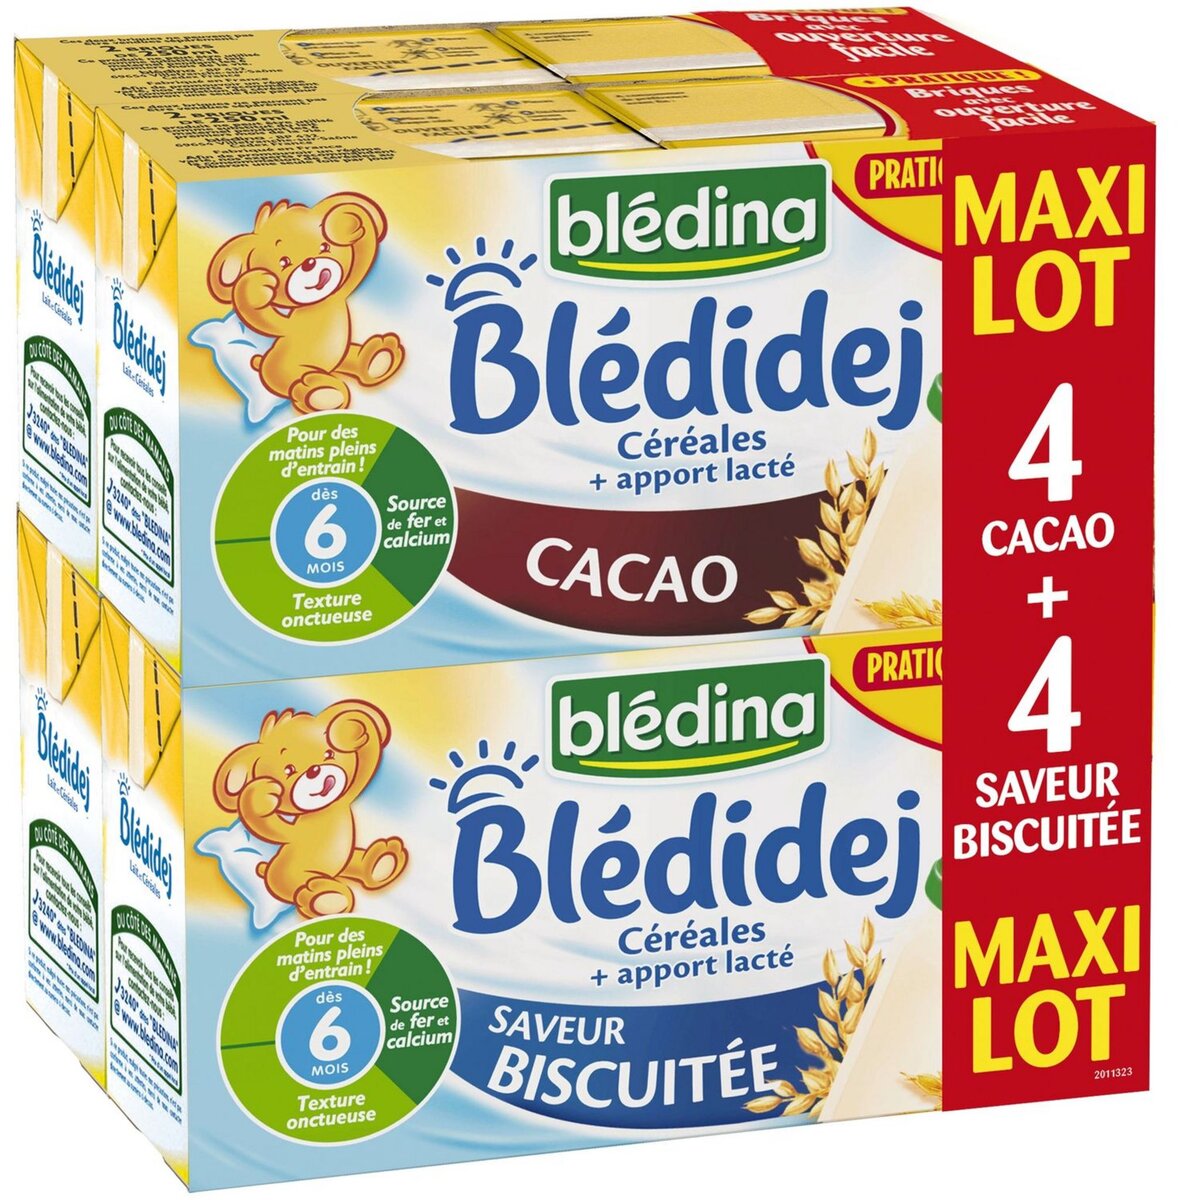 Blédina Blédidej, Céréales bébé Lactées, Dès 6 Mois, 250ml (4